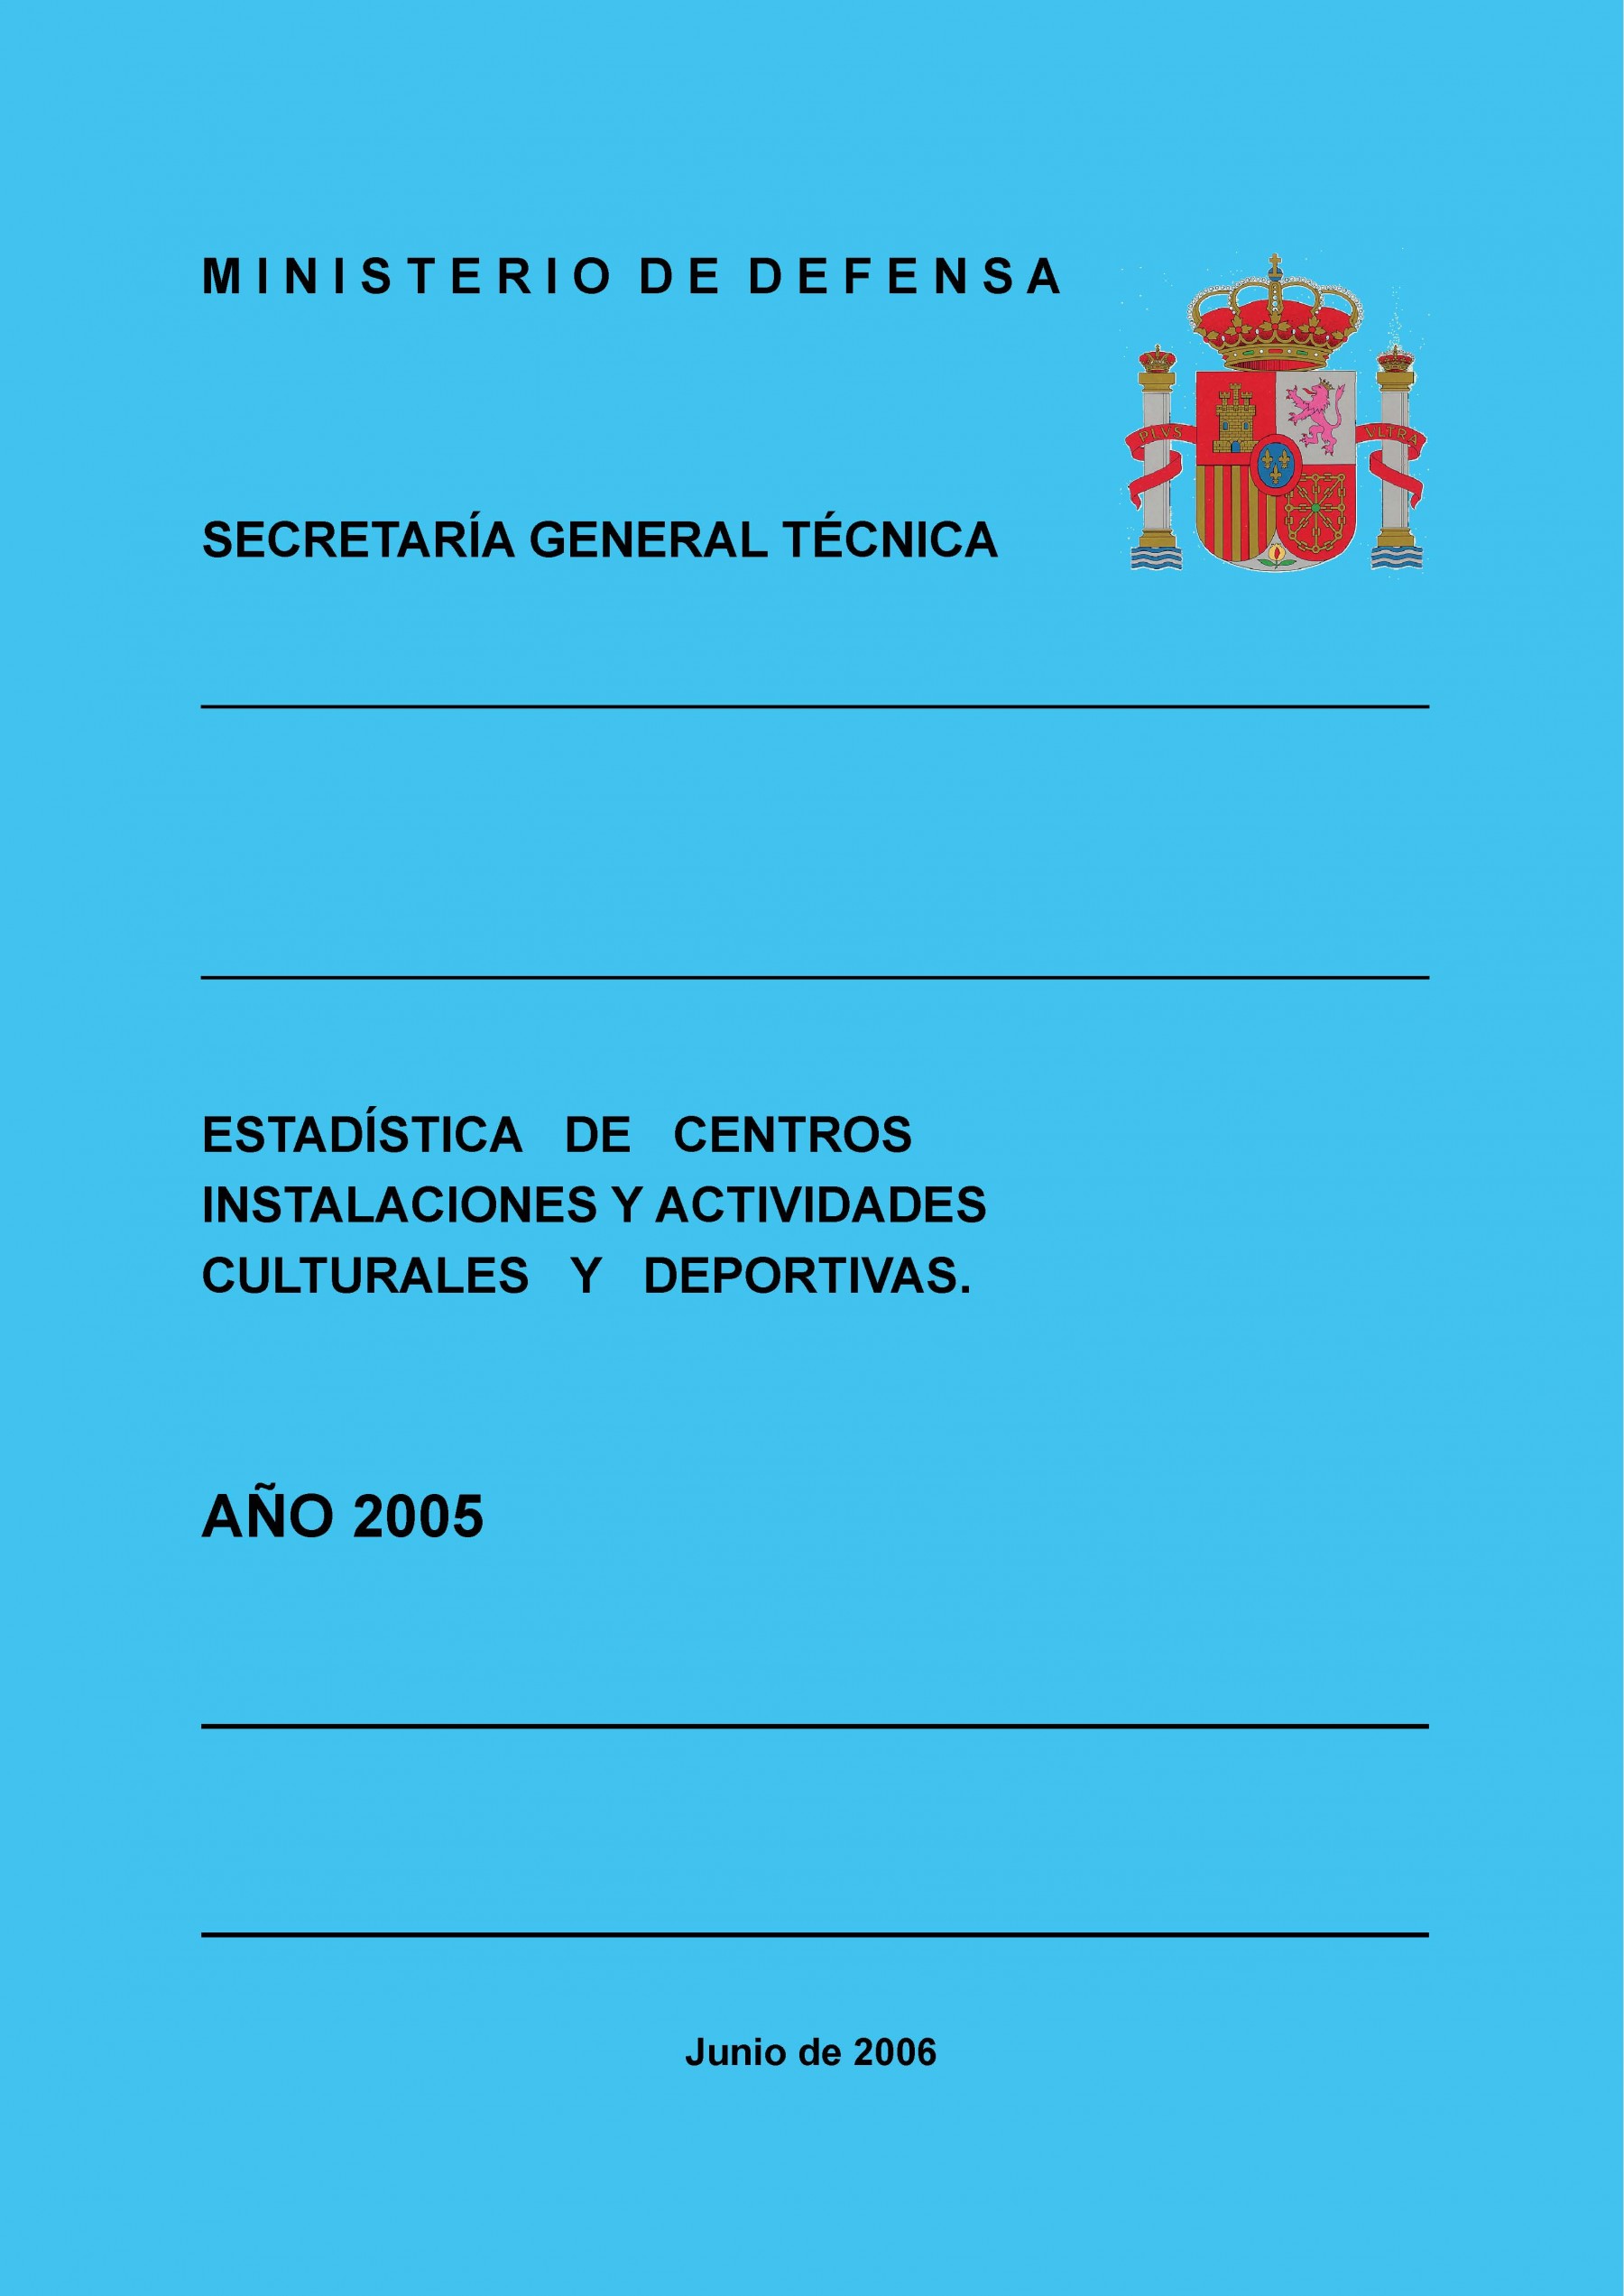 ESTADÍSTICA DE CENTROS, INSTALACIONES Y ACTIVIDADES CULTURALES Y DEPORTIVAS 2005